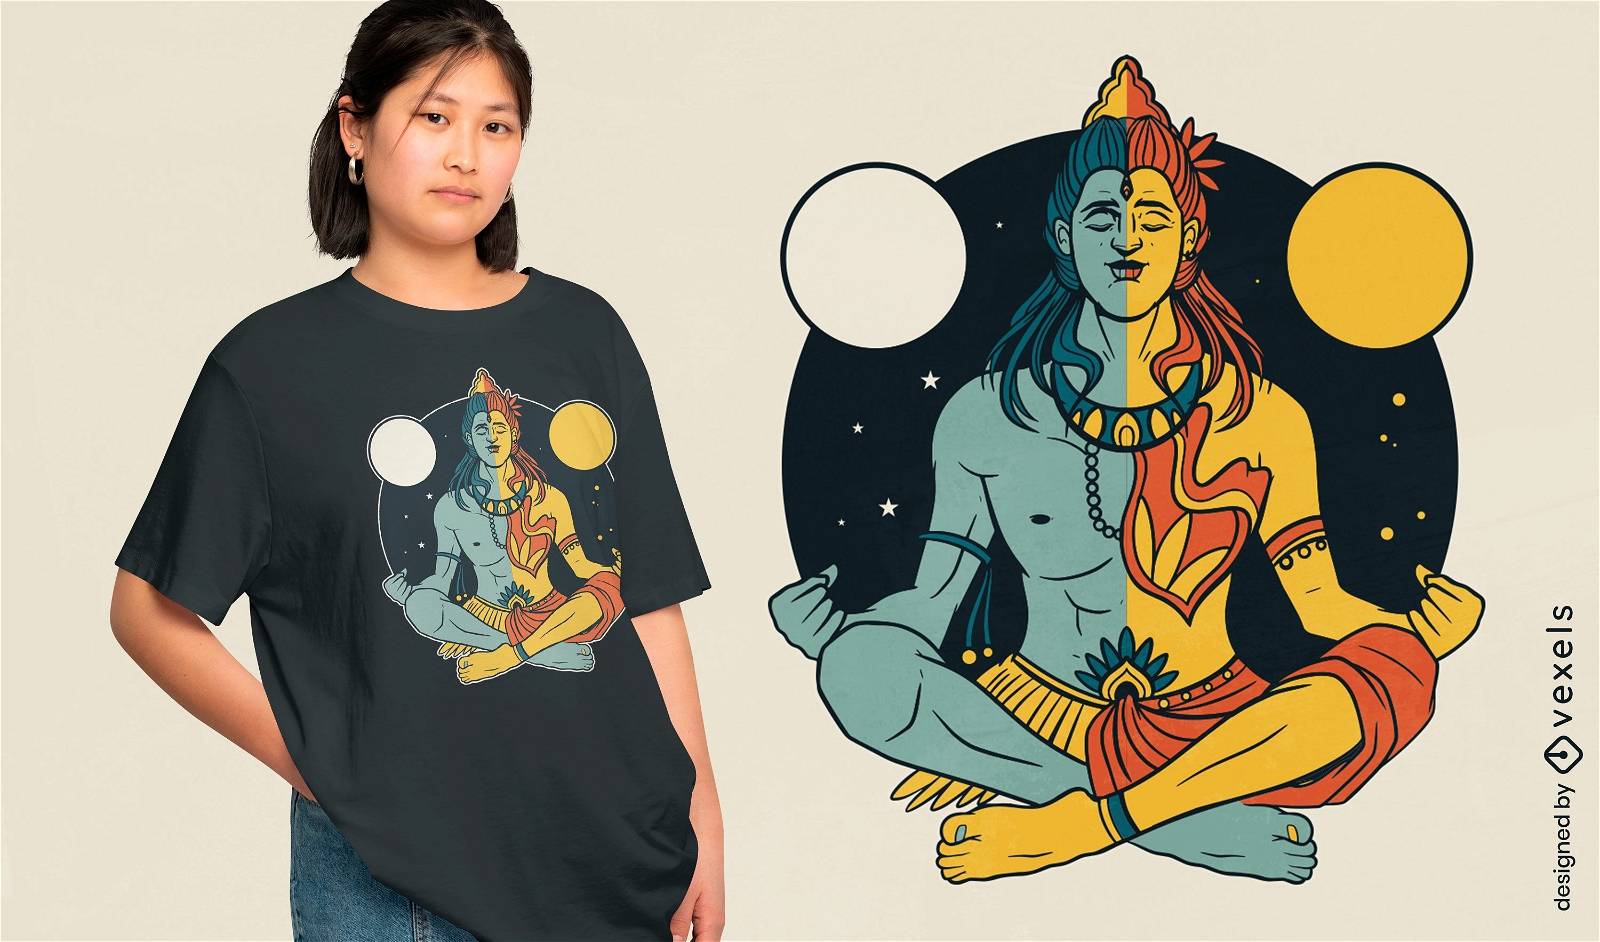 Dise?o de camiseta de noche y d?a de la deidad india Shiva